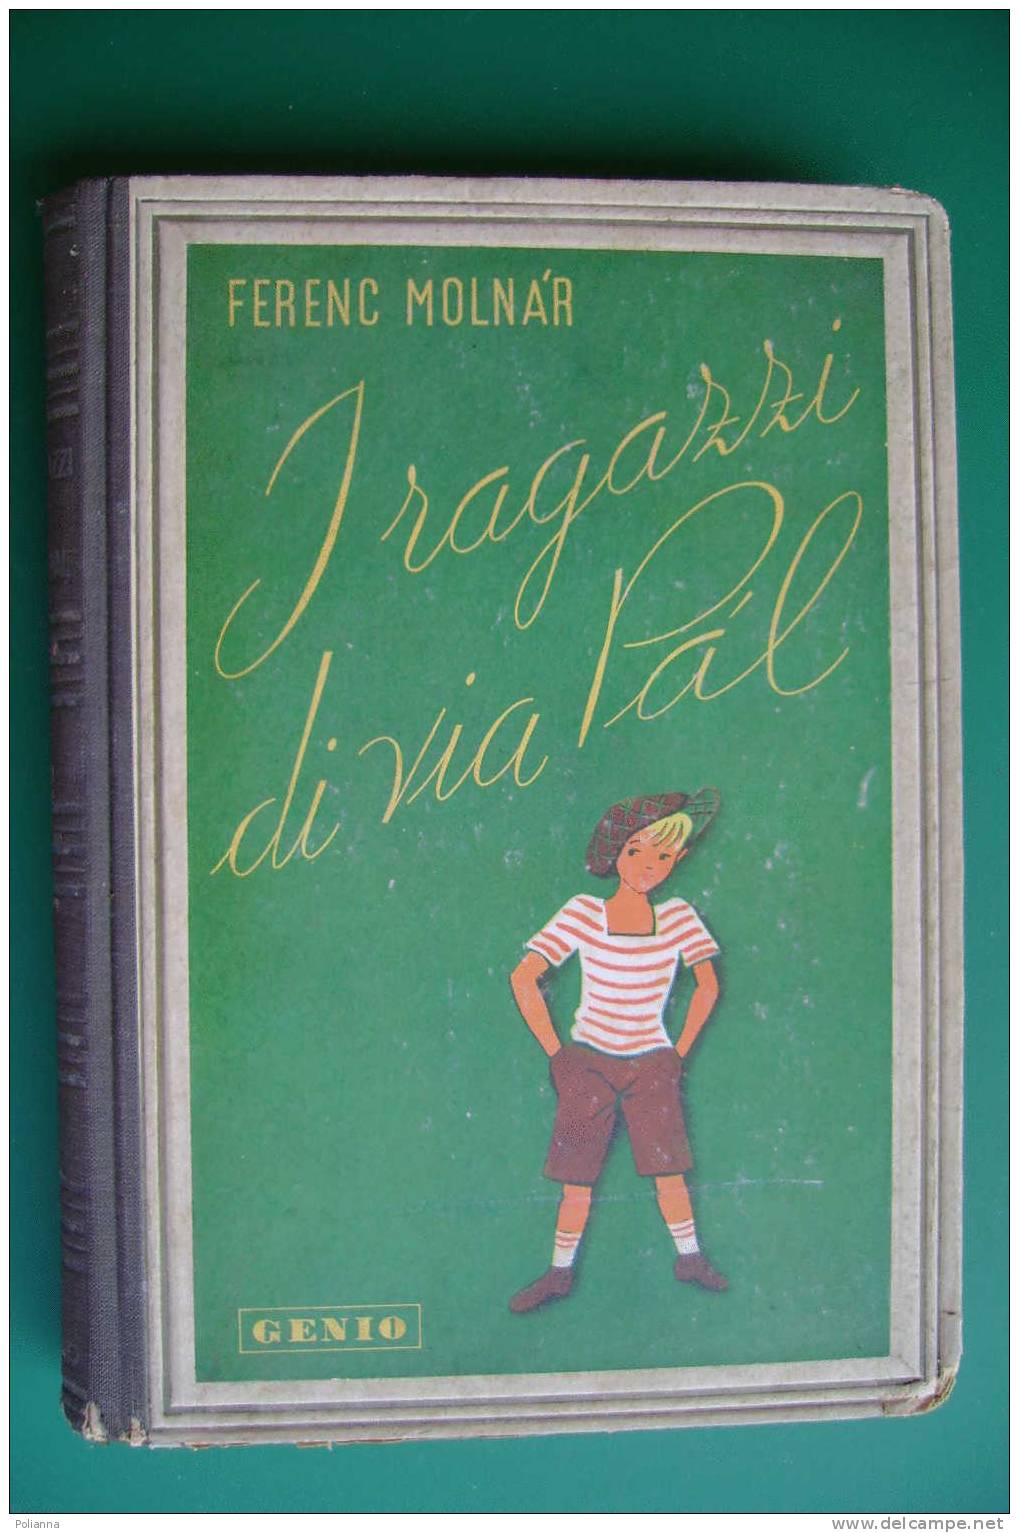 PDC/40 Ferenc Molnar I RAGAZZI DI VIA PAL Genio 1945/illustrato - Anciens